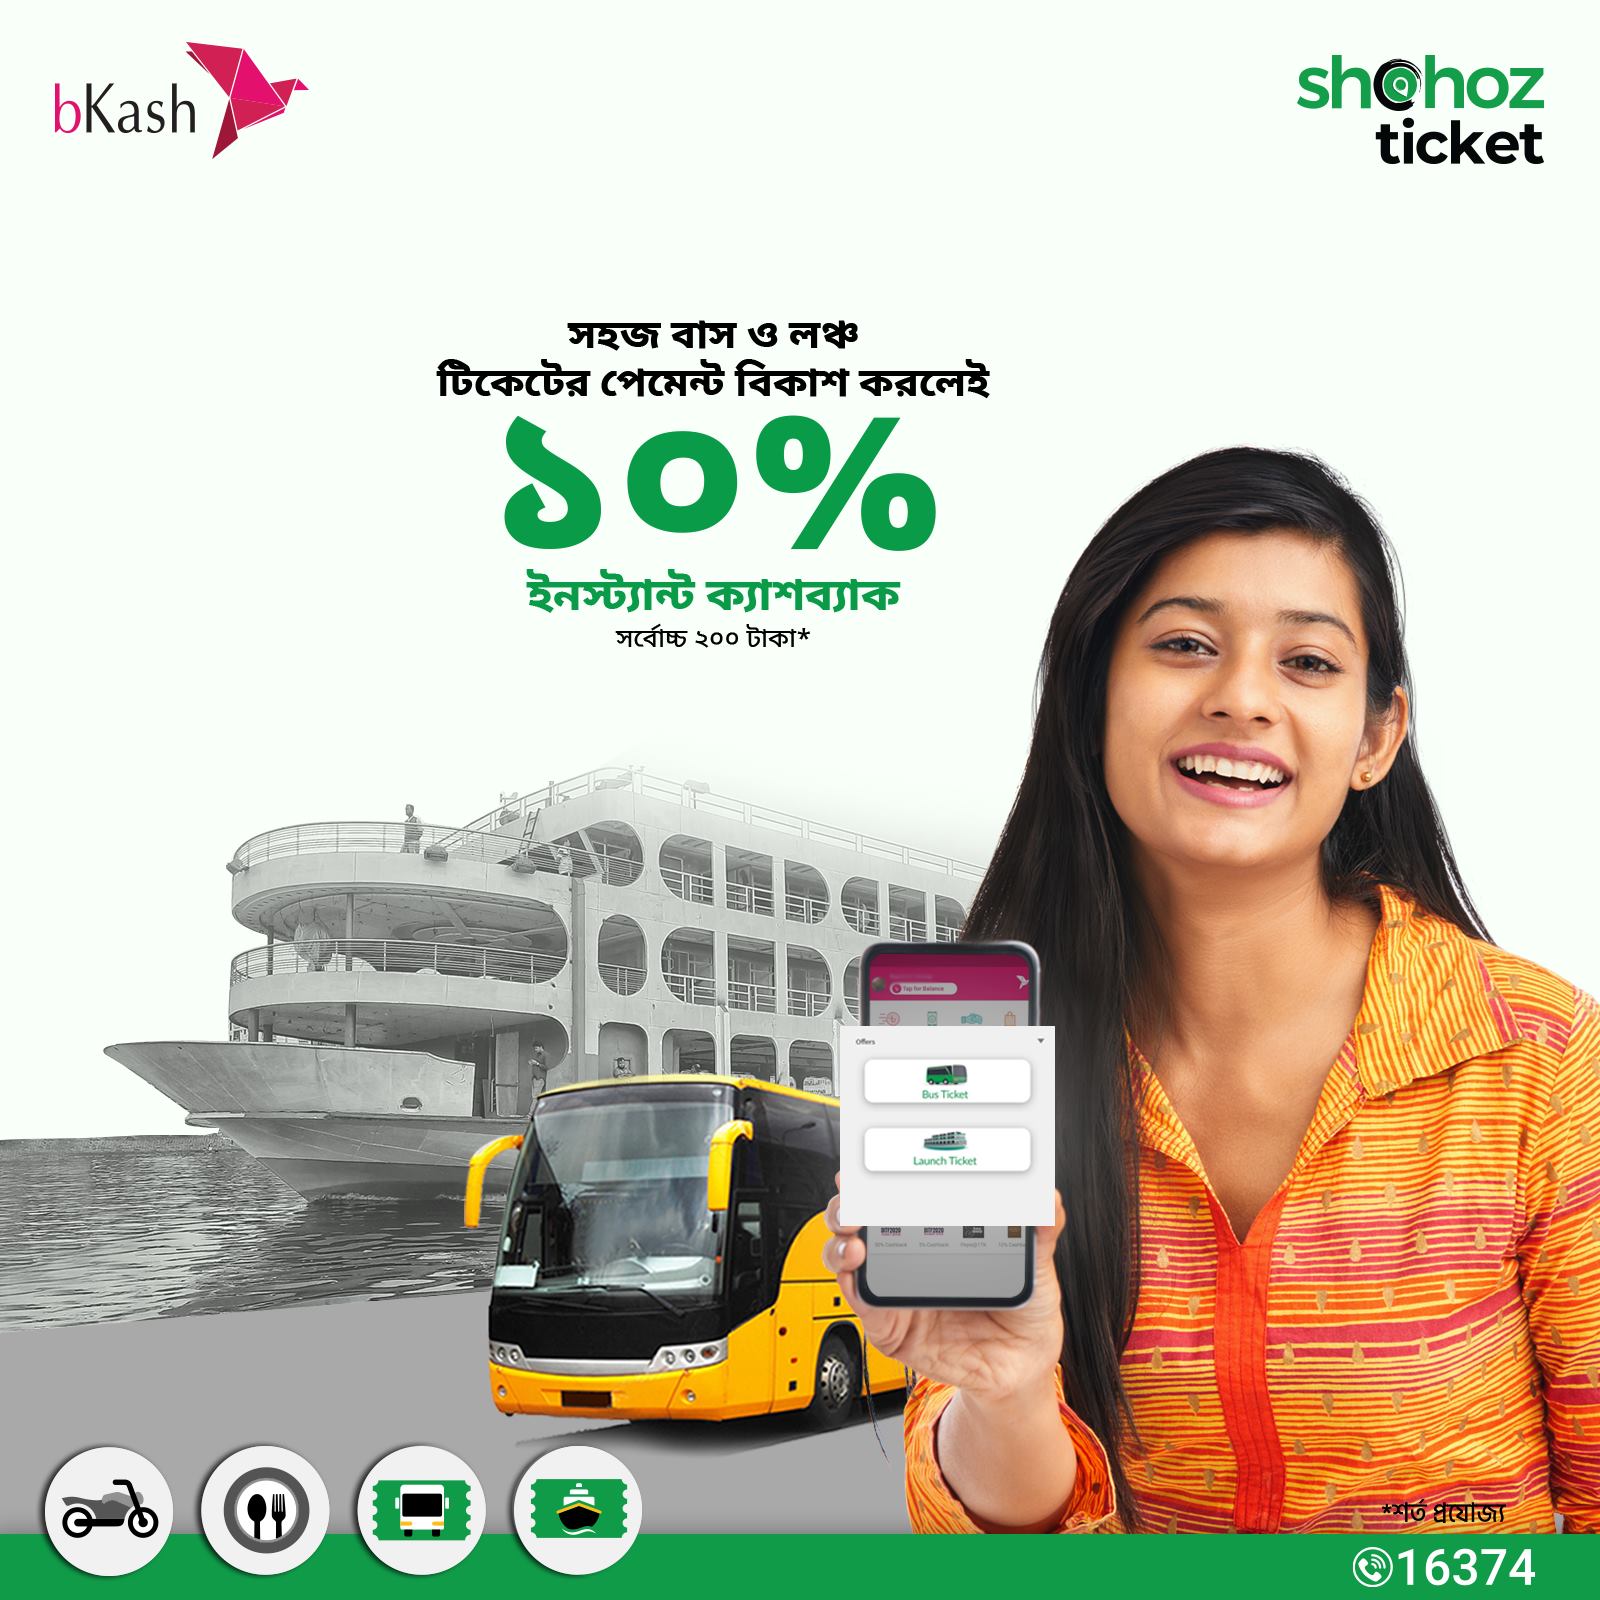 bKash payment 10% Cashback Shohoz bus & launch